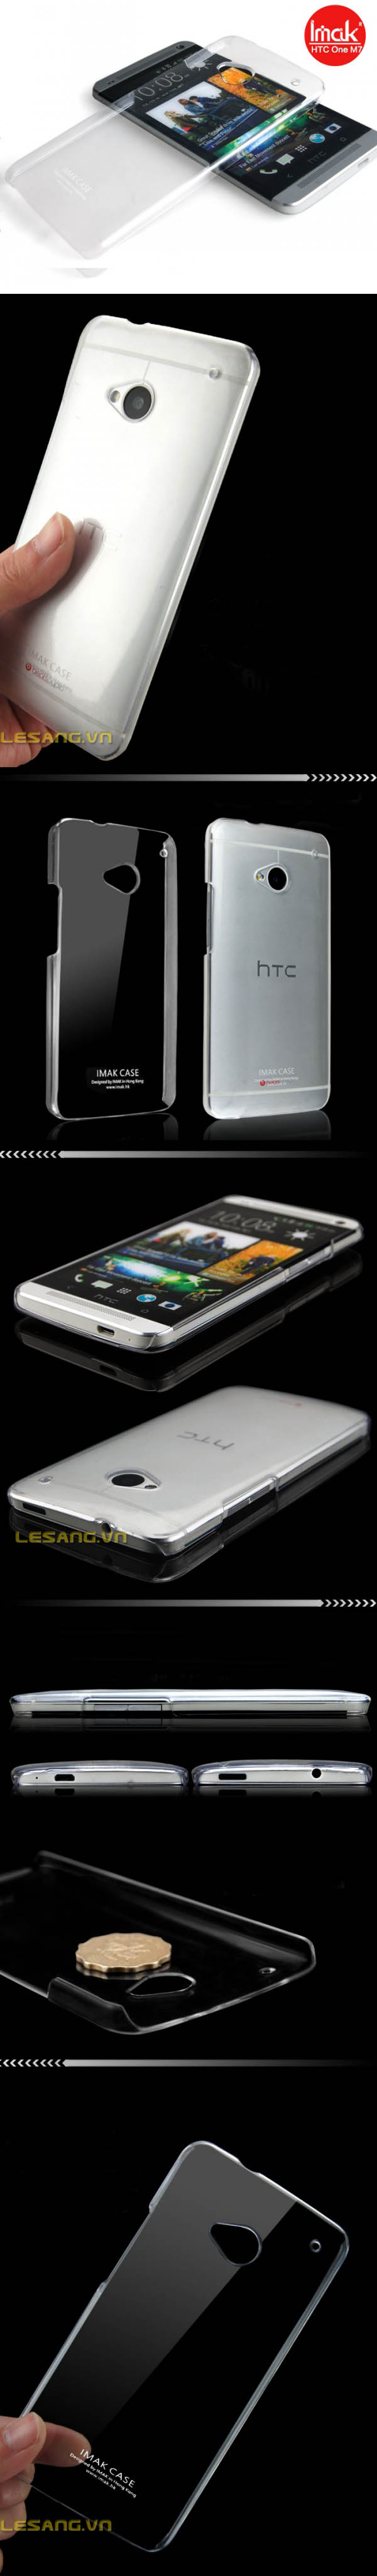 Ốp lưng HTC One imak trong suốt, siêu mỏng - 5